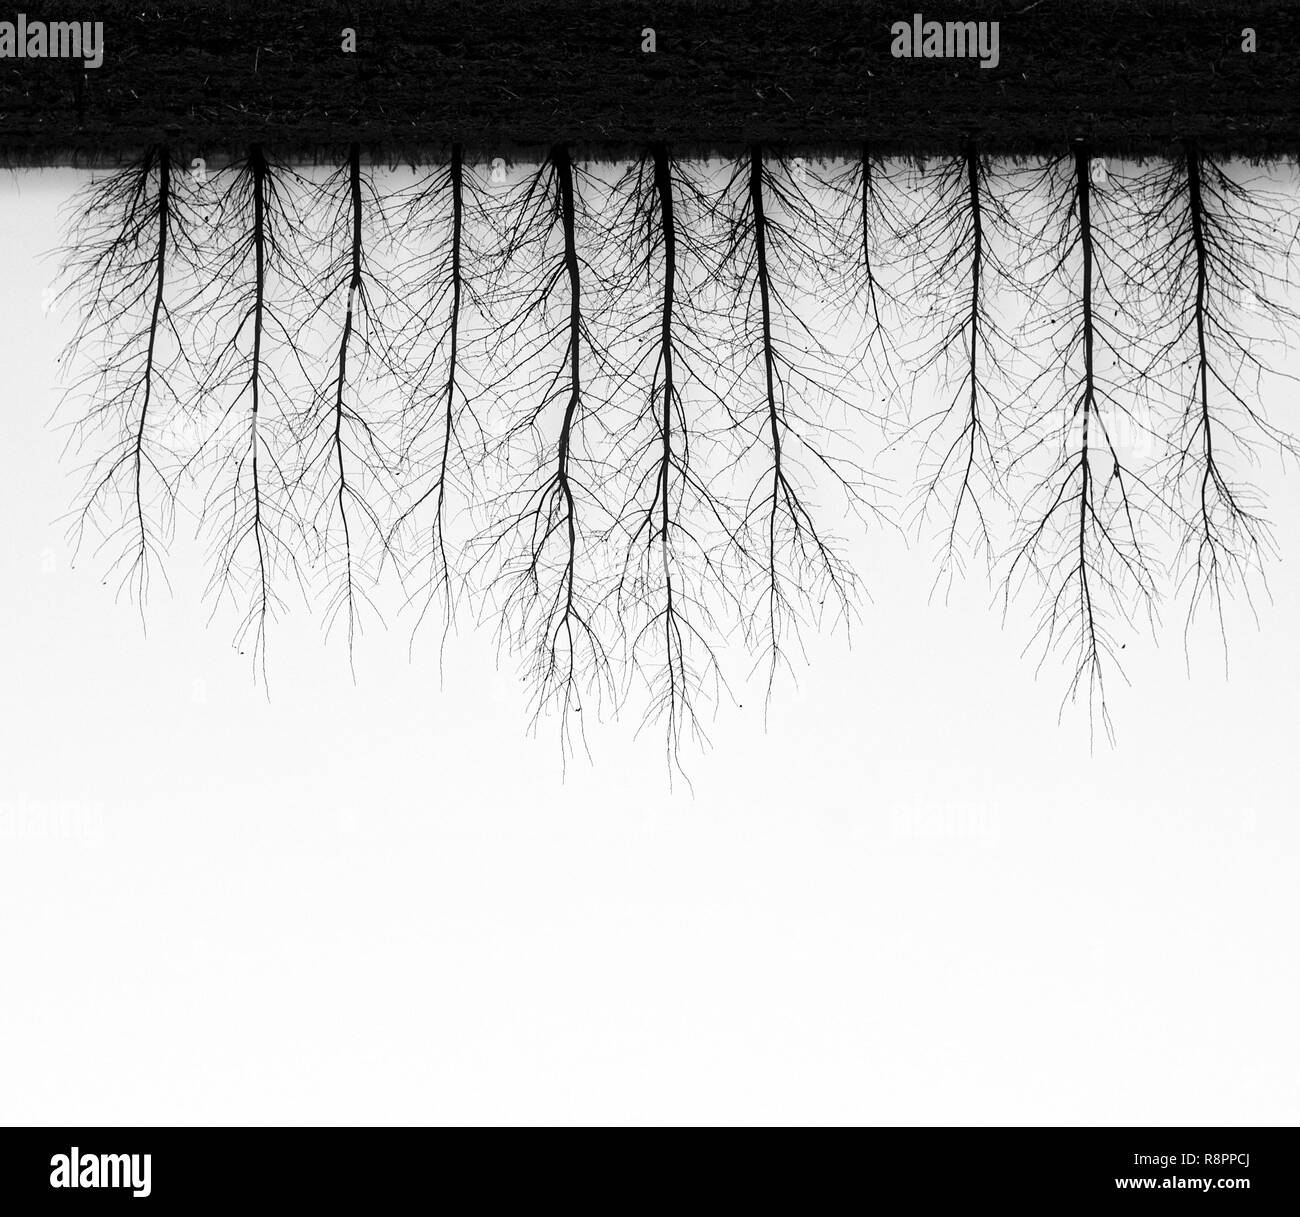 Une photo d'arbres à l'envers sur un jour brumeux en noir et blanc Banque D'Images